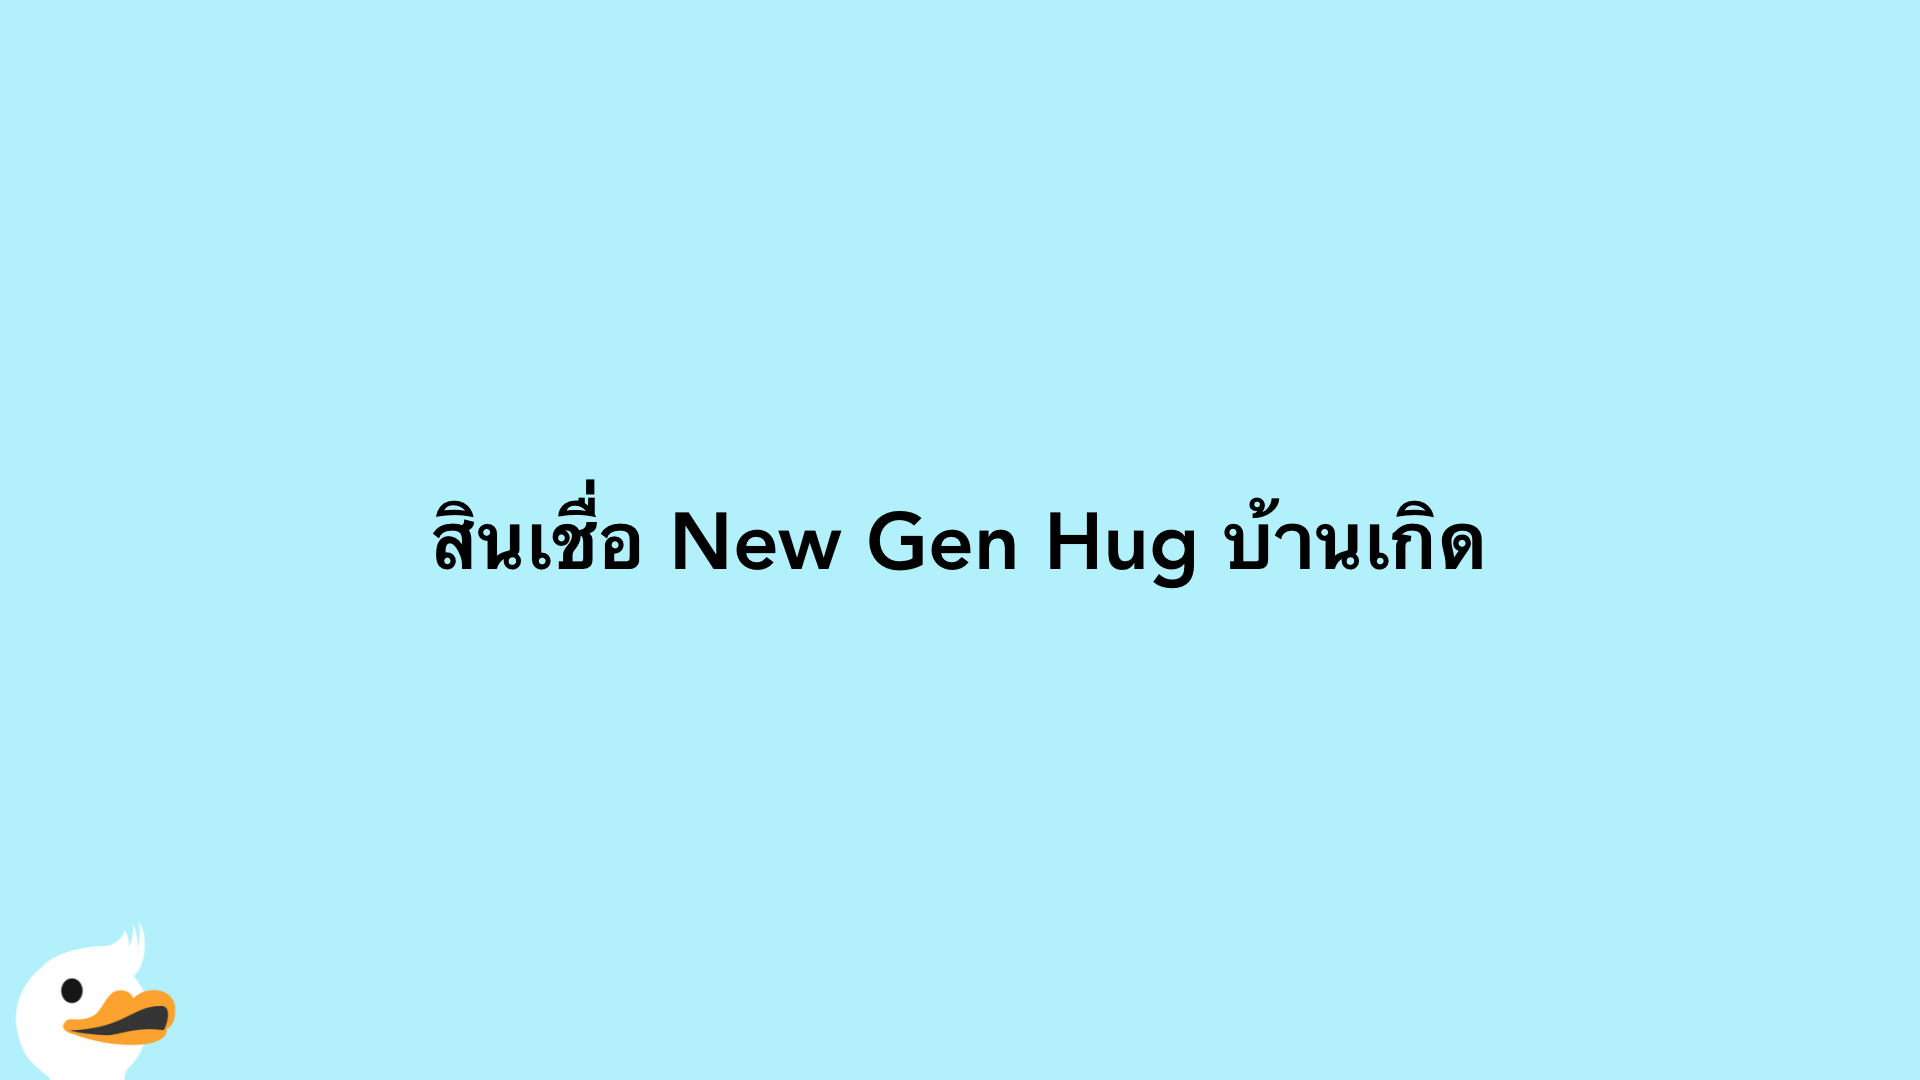 สินเชื่อ New Gen Hug บ้านเกิด